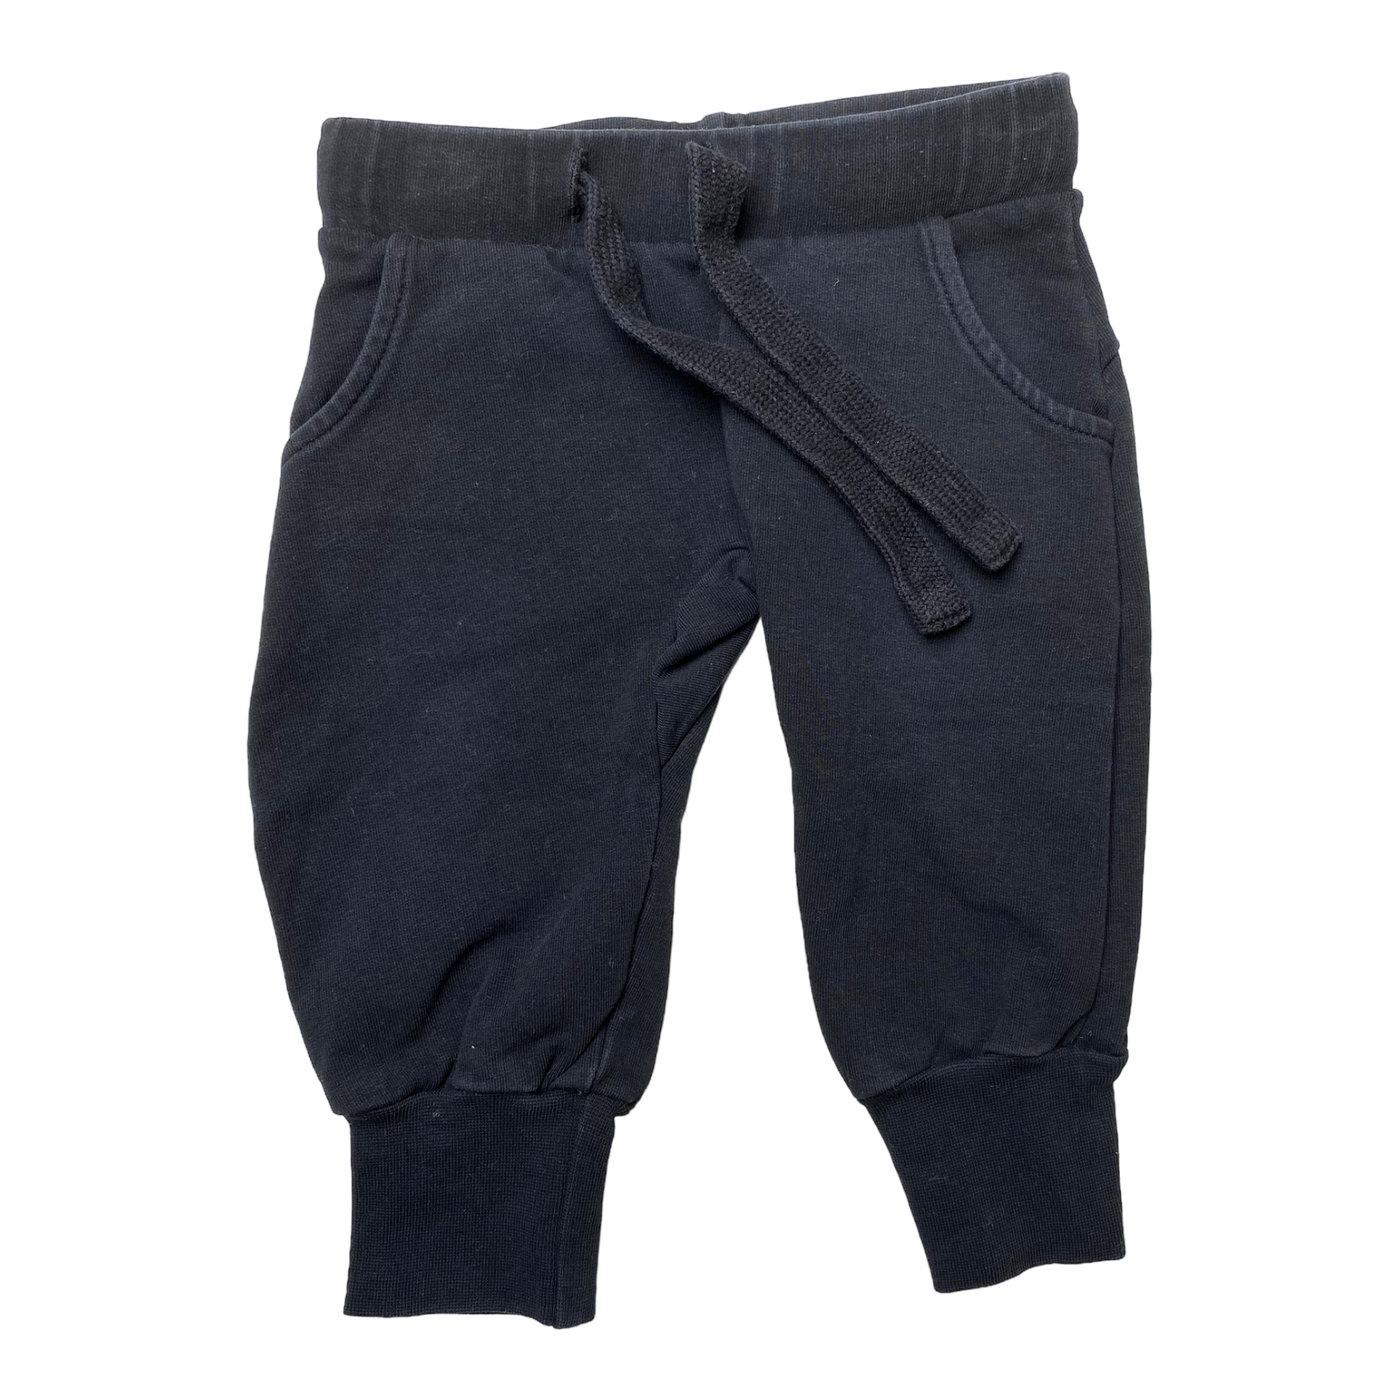 Kaiko sweat pants, black | 62/68cm